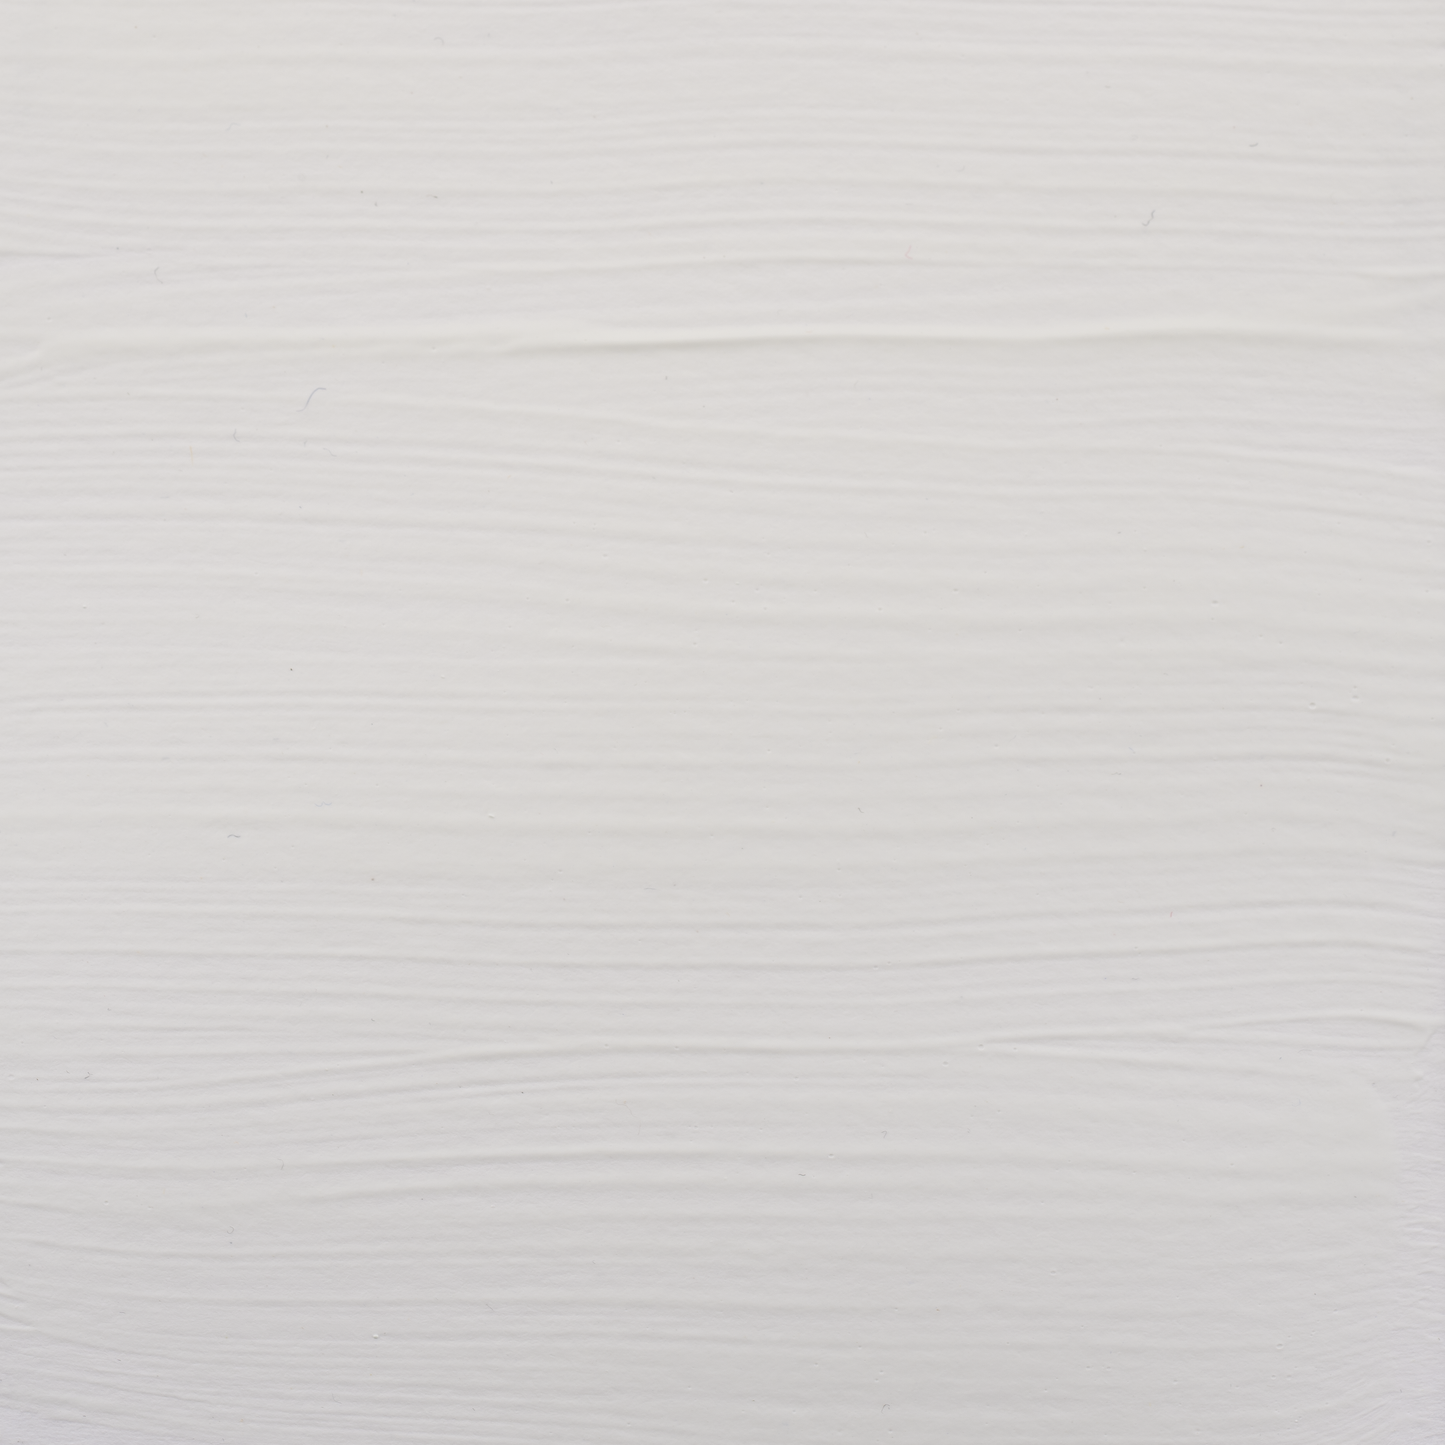 Amsterdam Standard Acrylic Paints 120mL : Zinc White 104